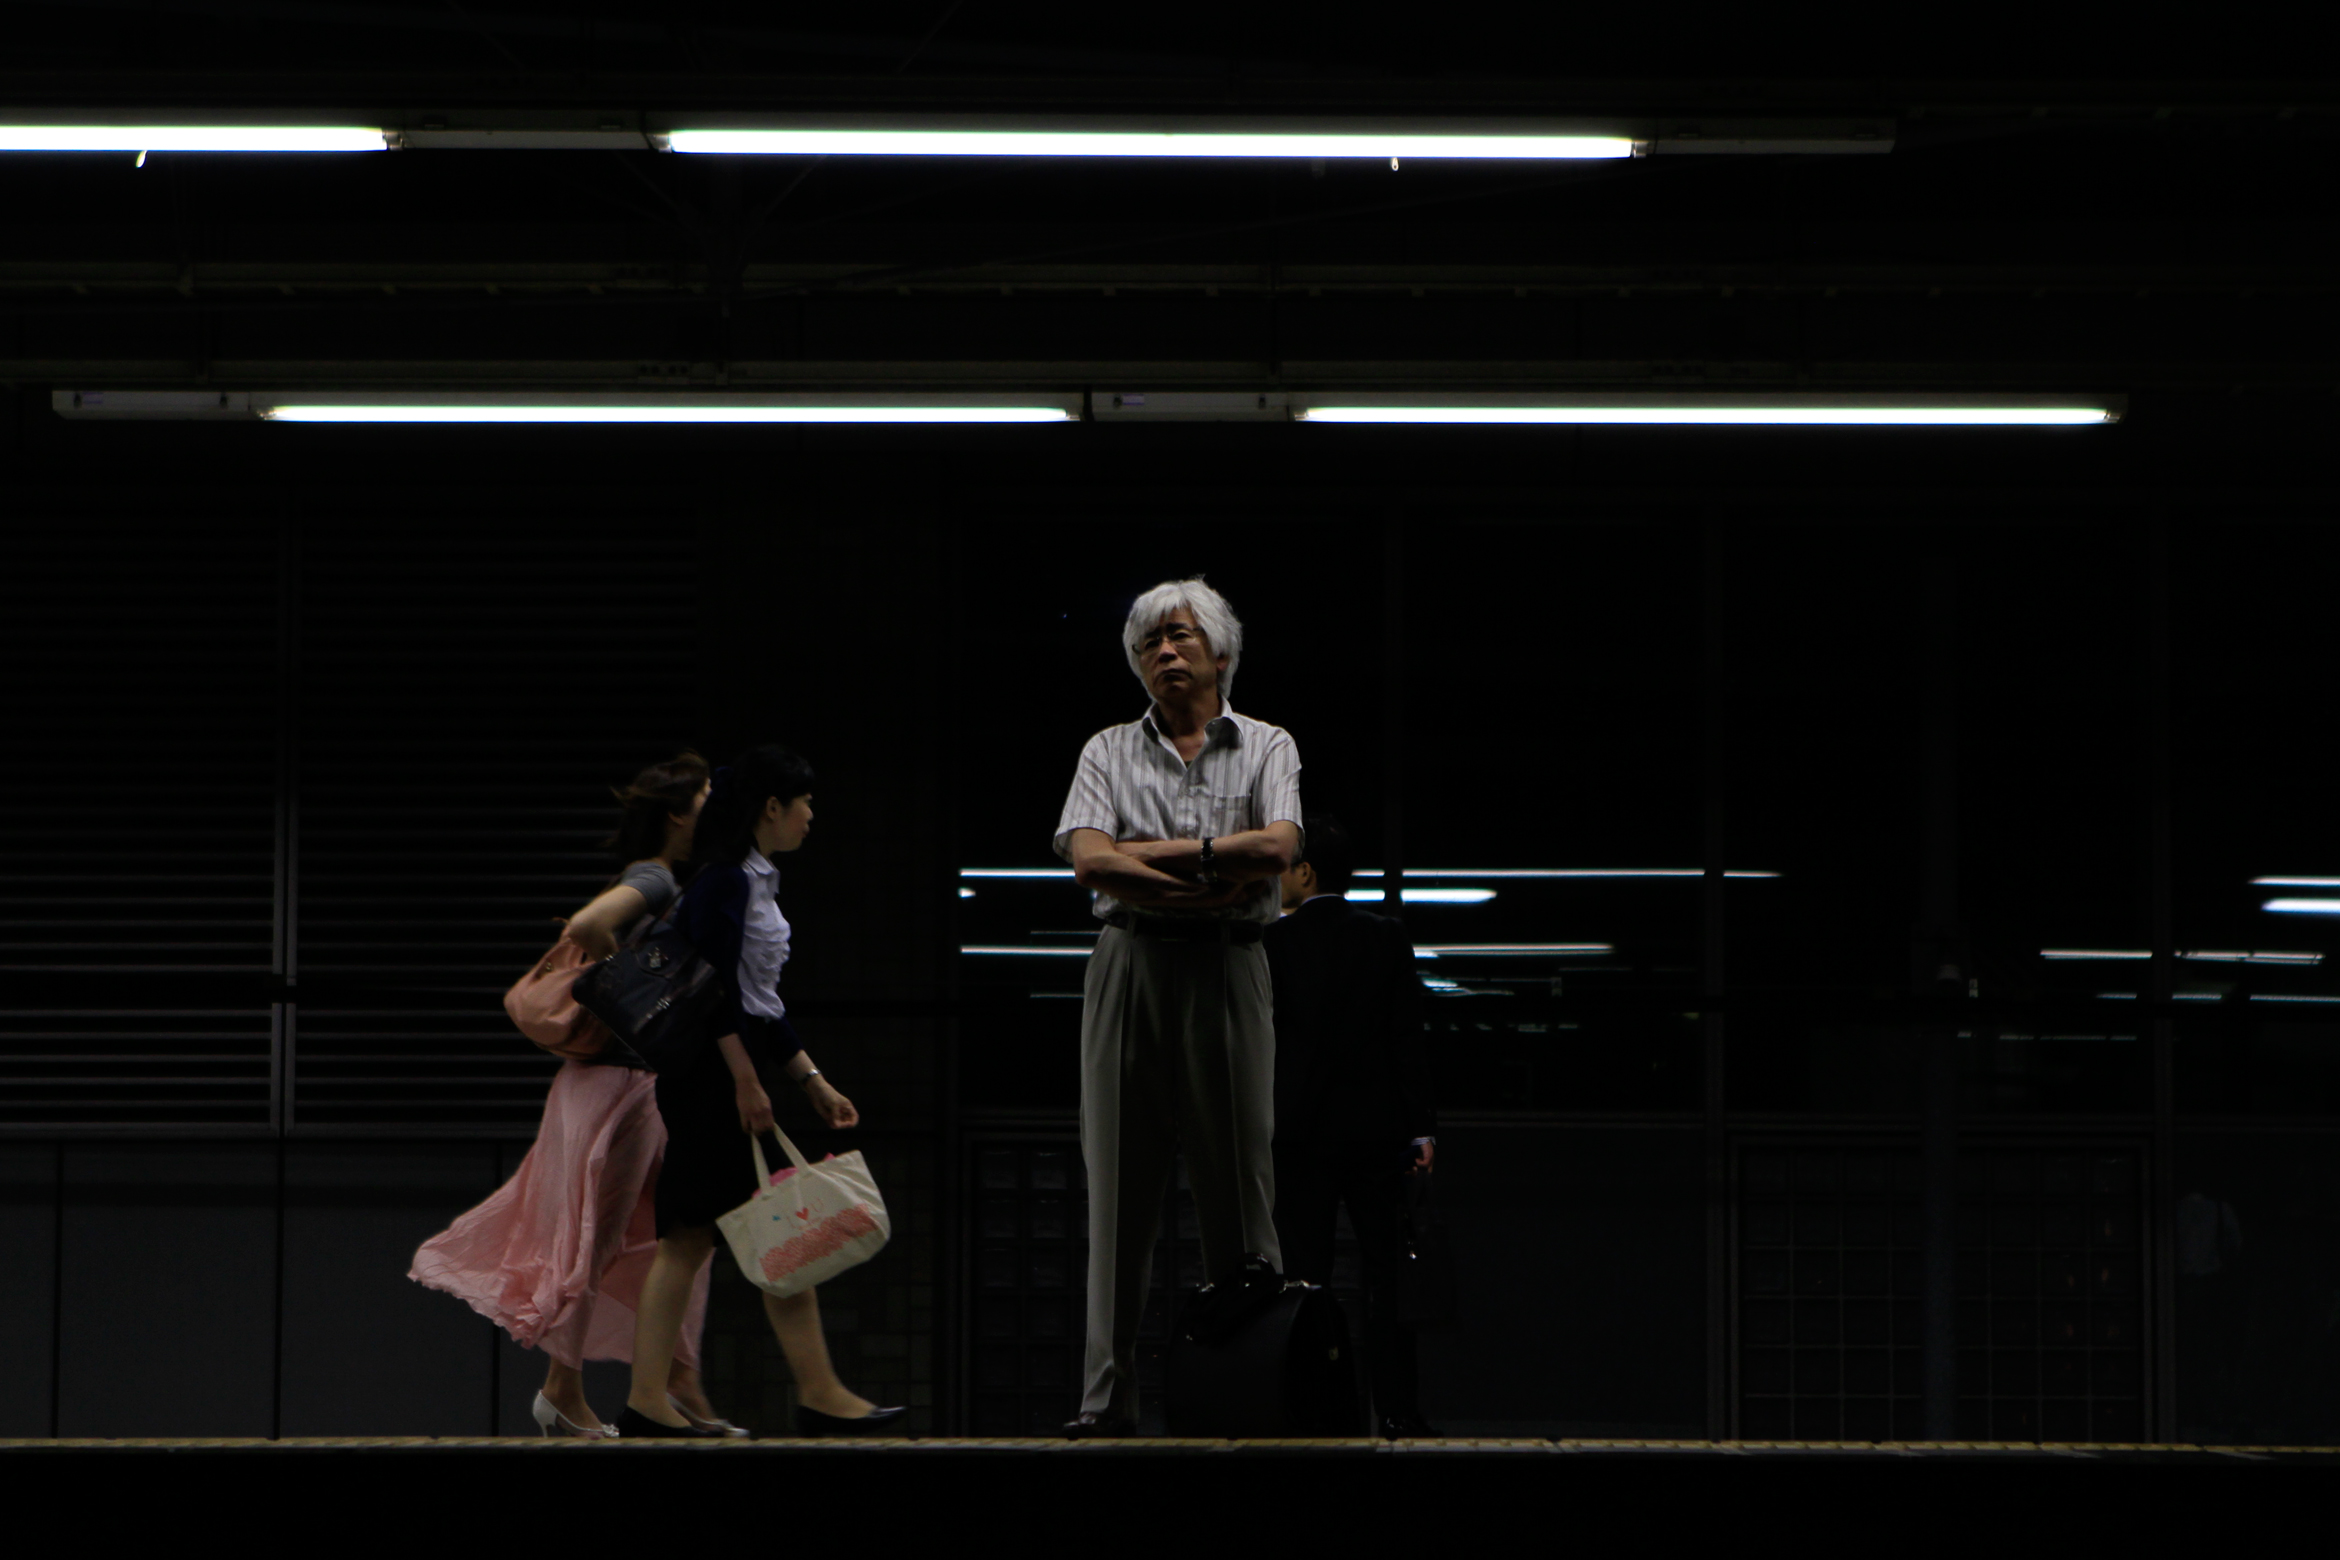 tokyo-subway